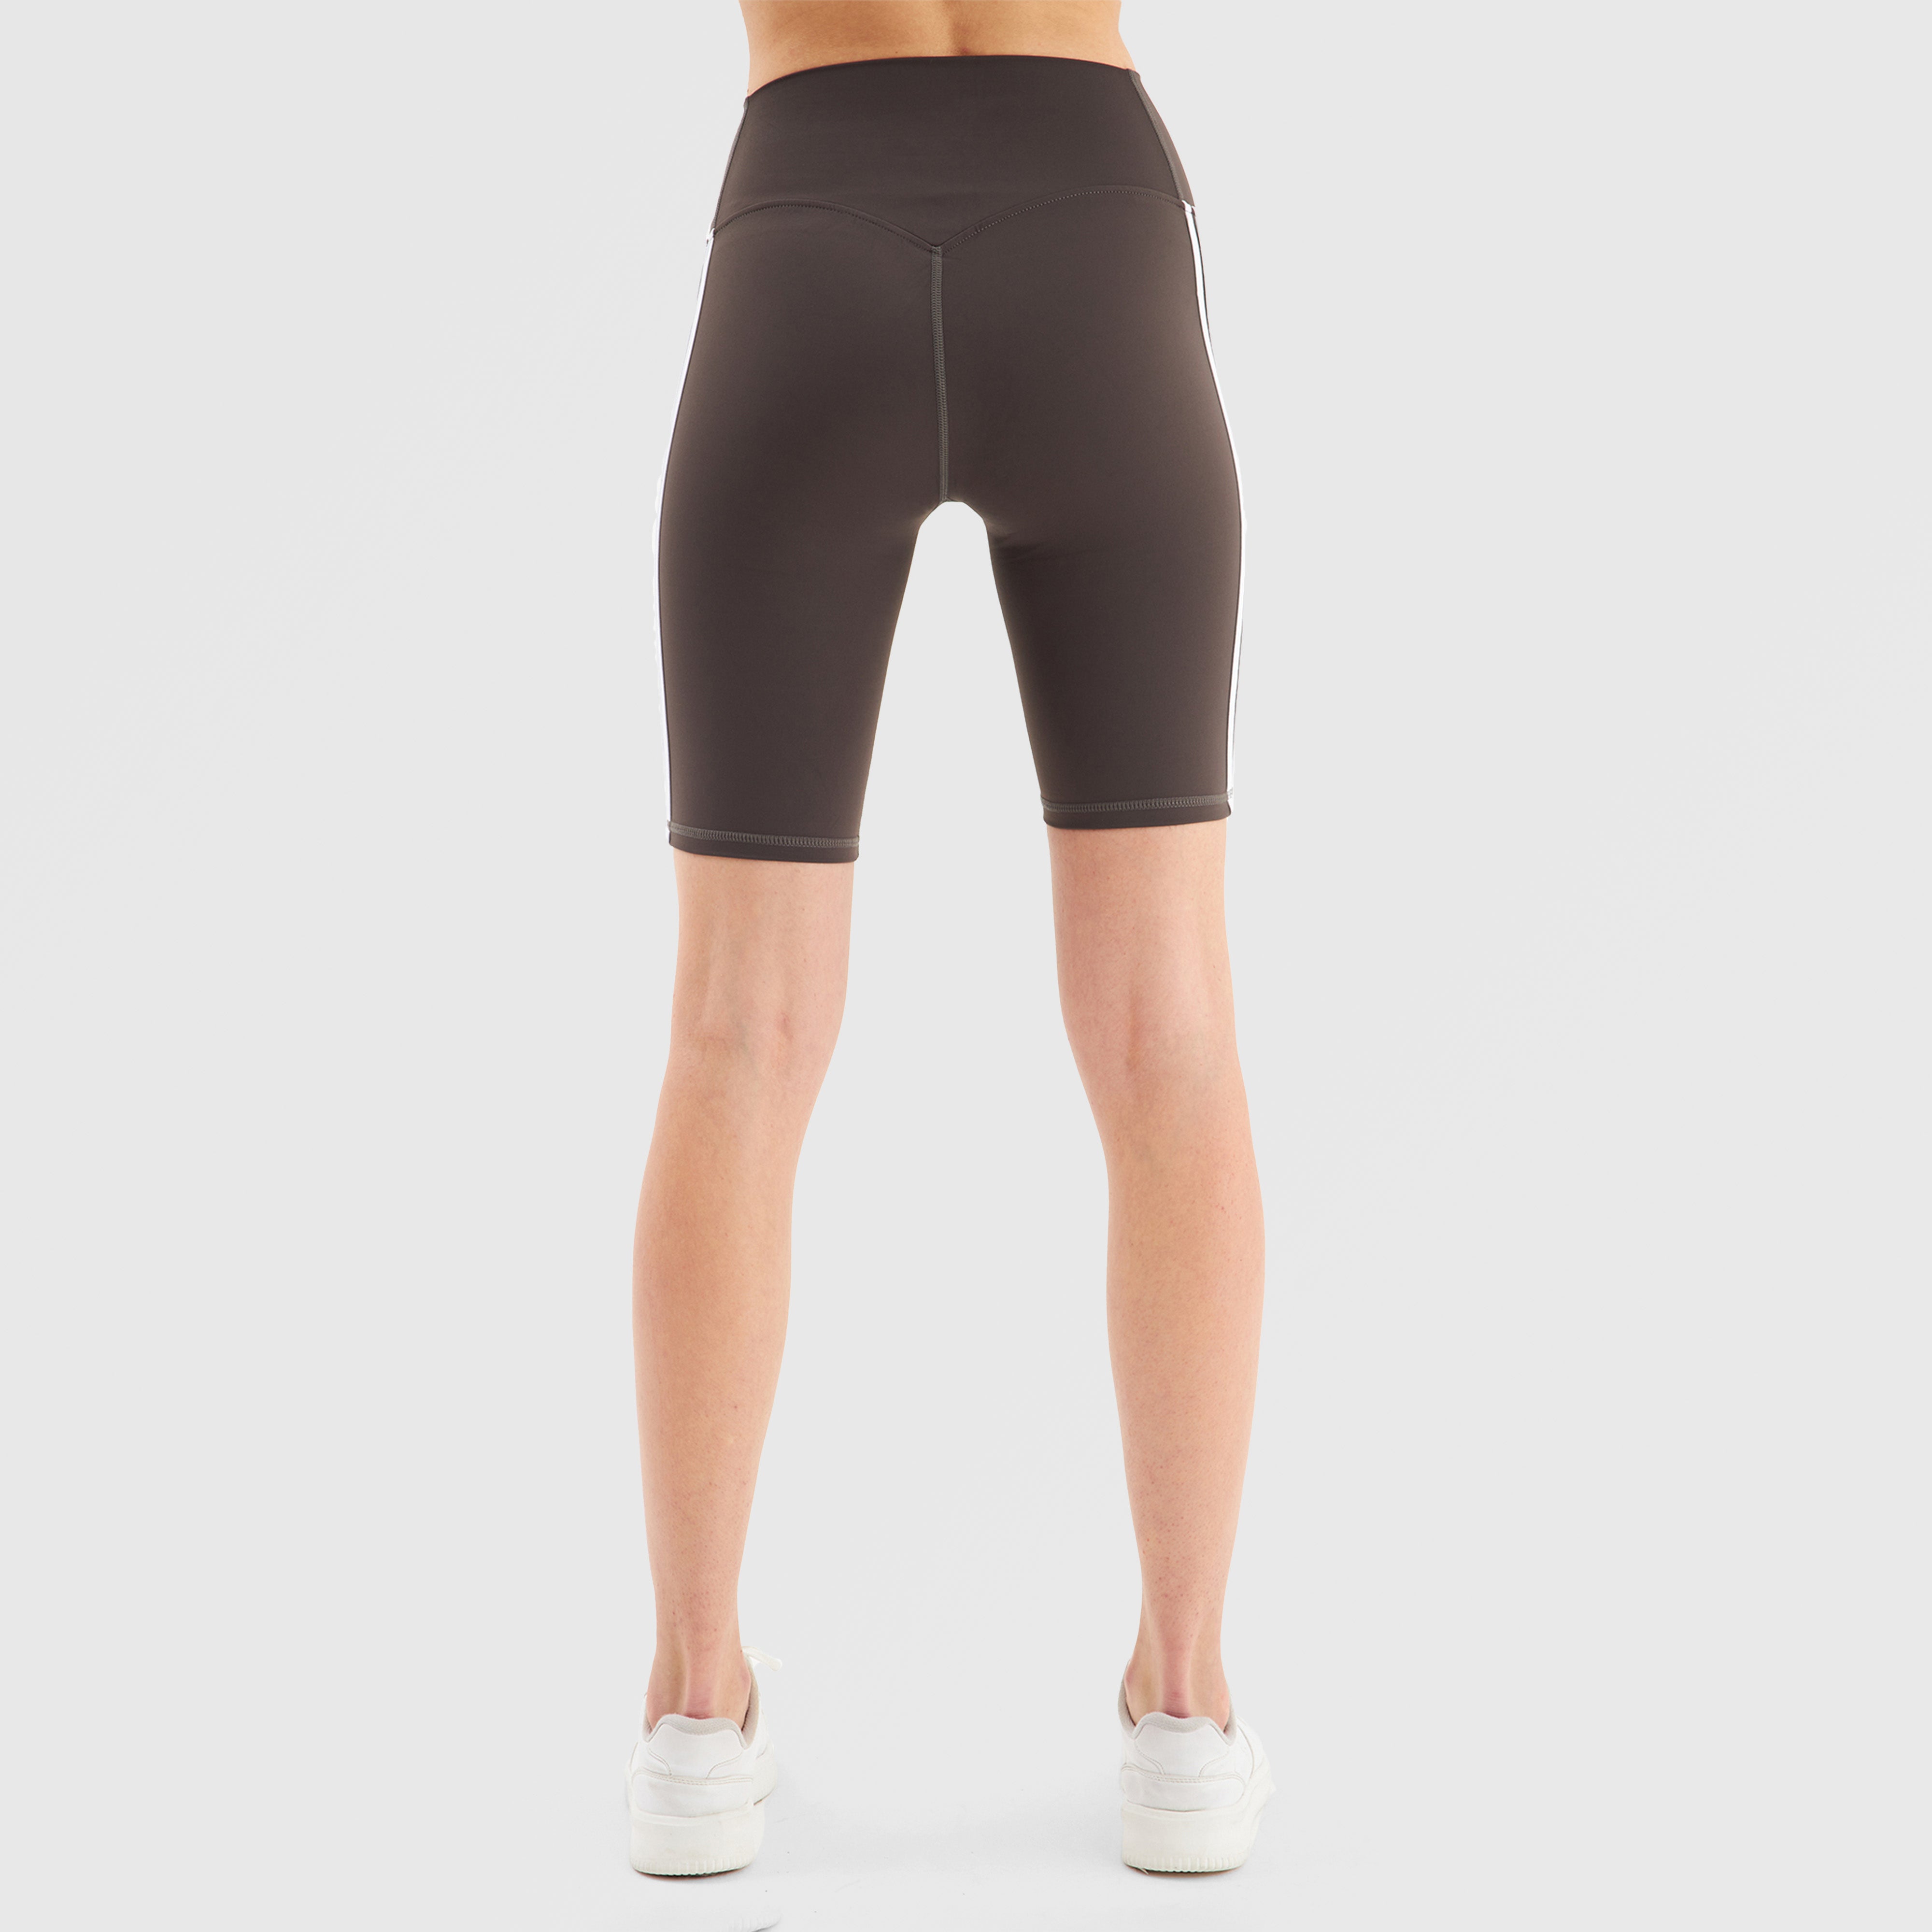 GA Aerobic Shorts (Charcoal)